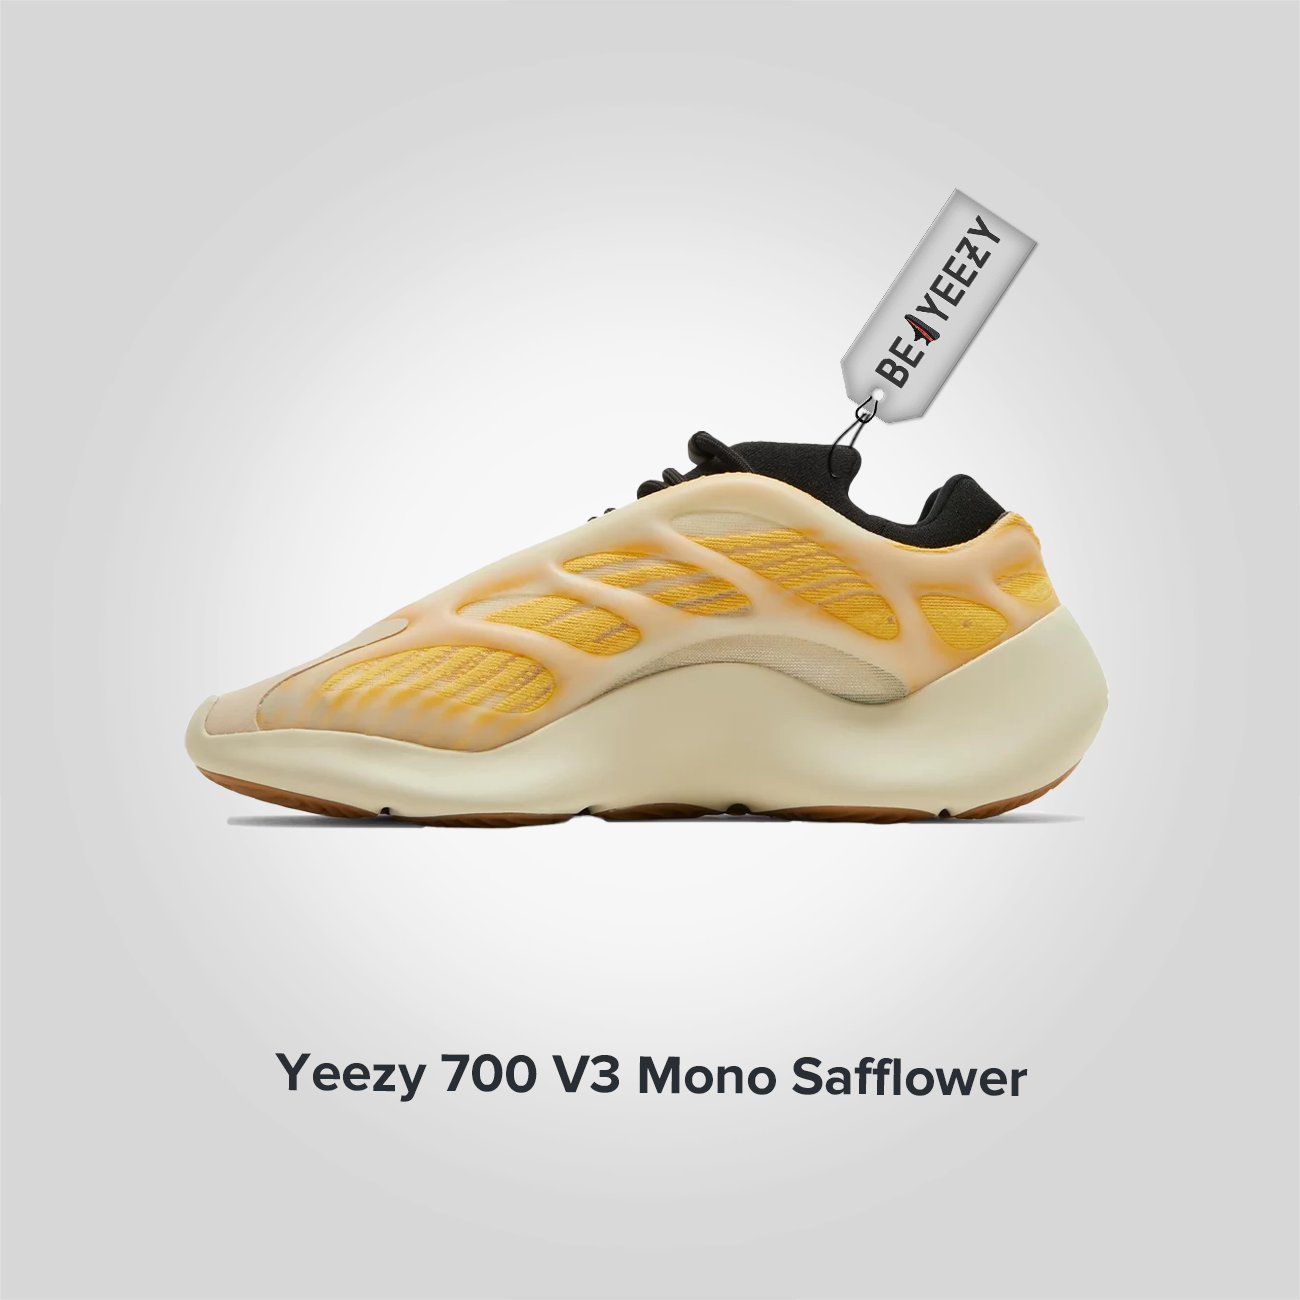 Yeezy 700 V3 Mono Safflower